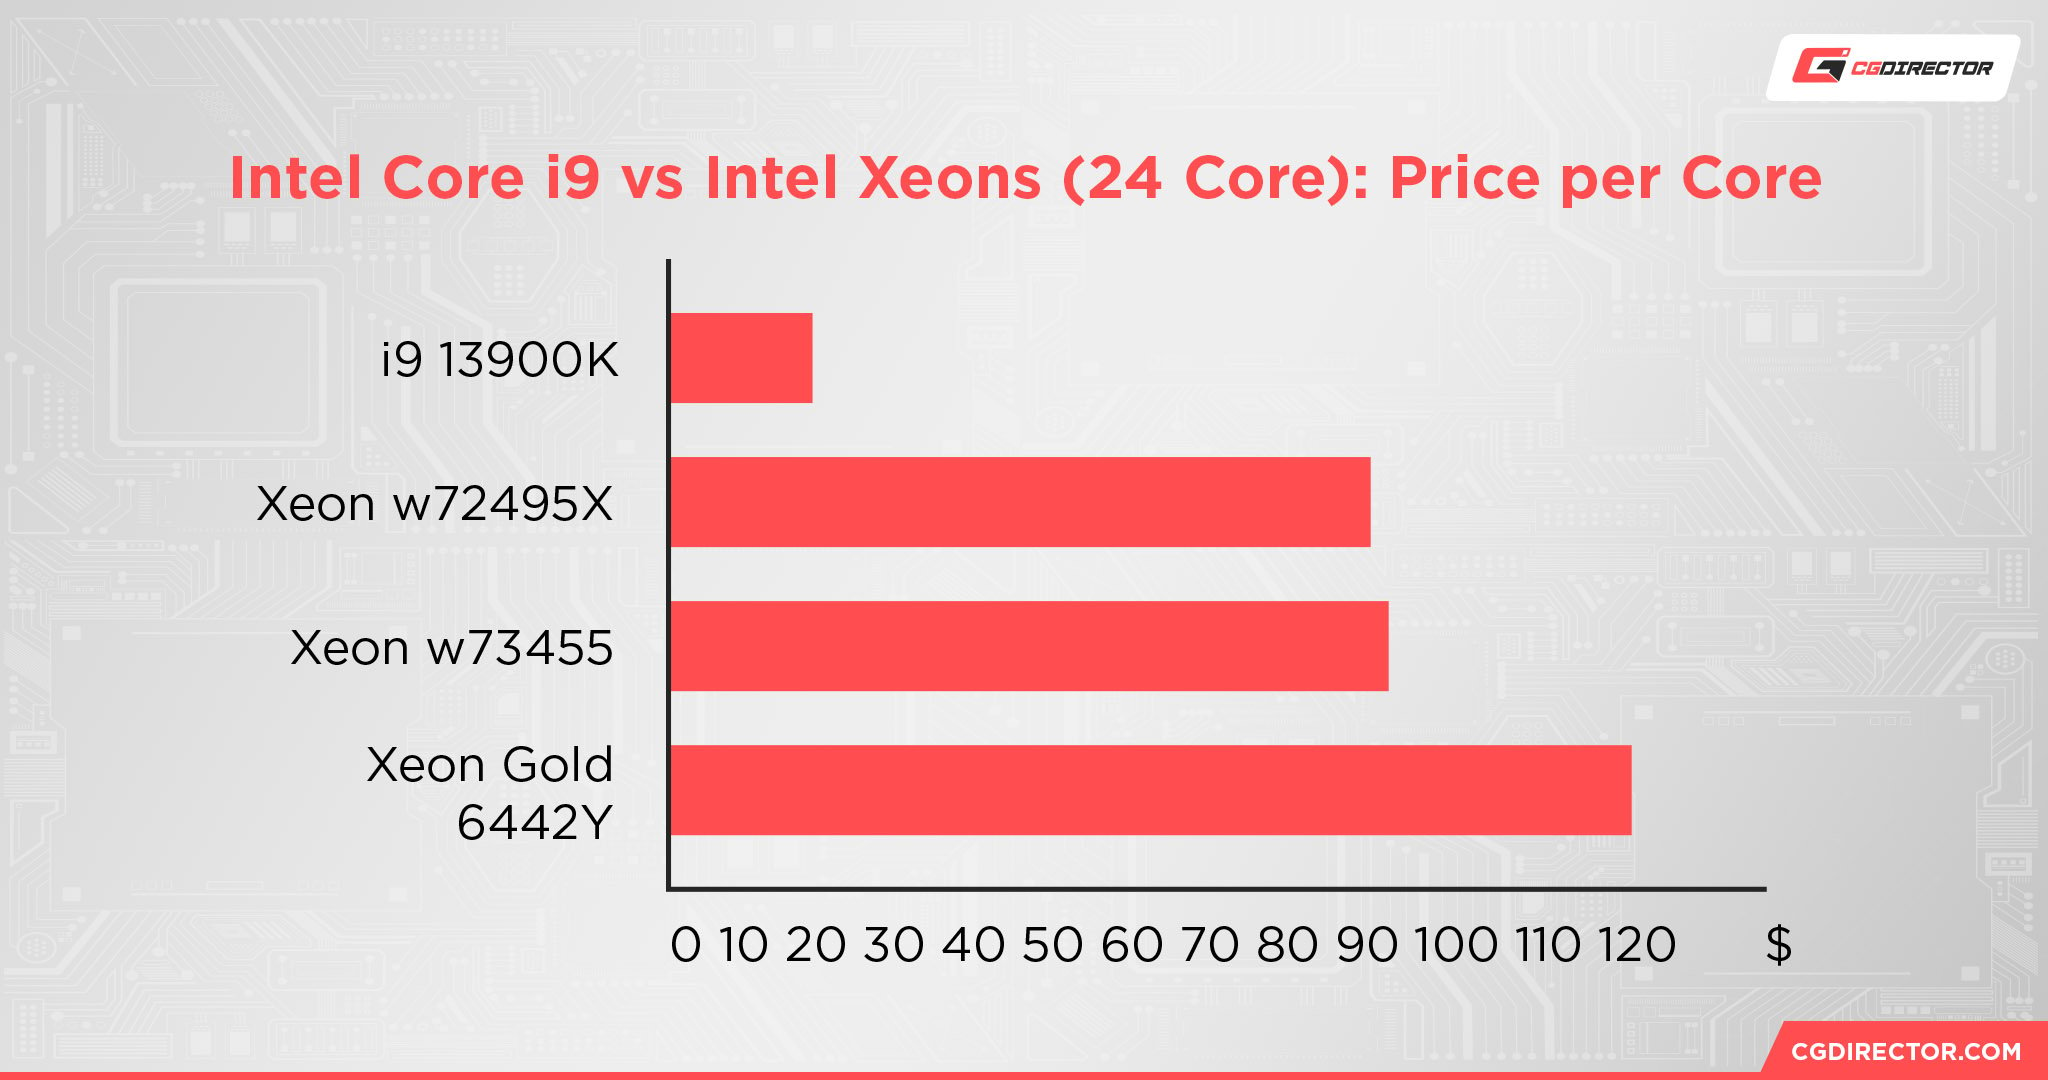 Intel Core i9 vs Intel Xeons (24 Core) Price per Core